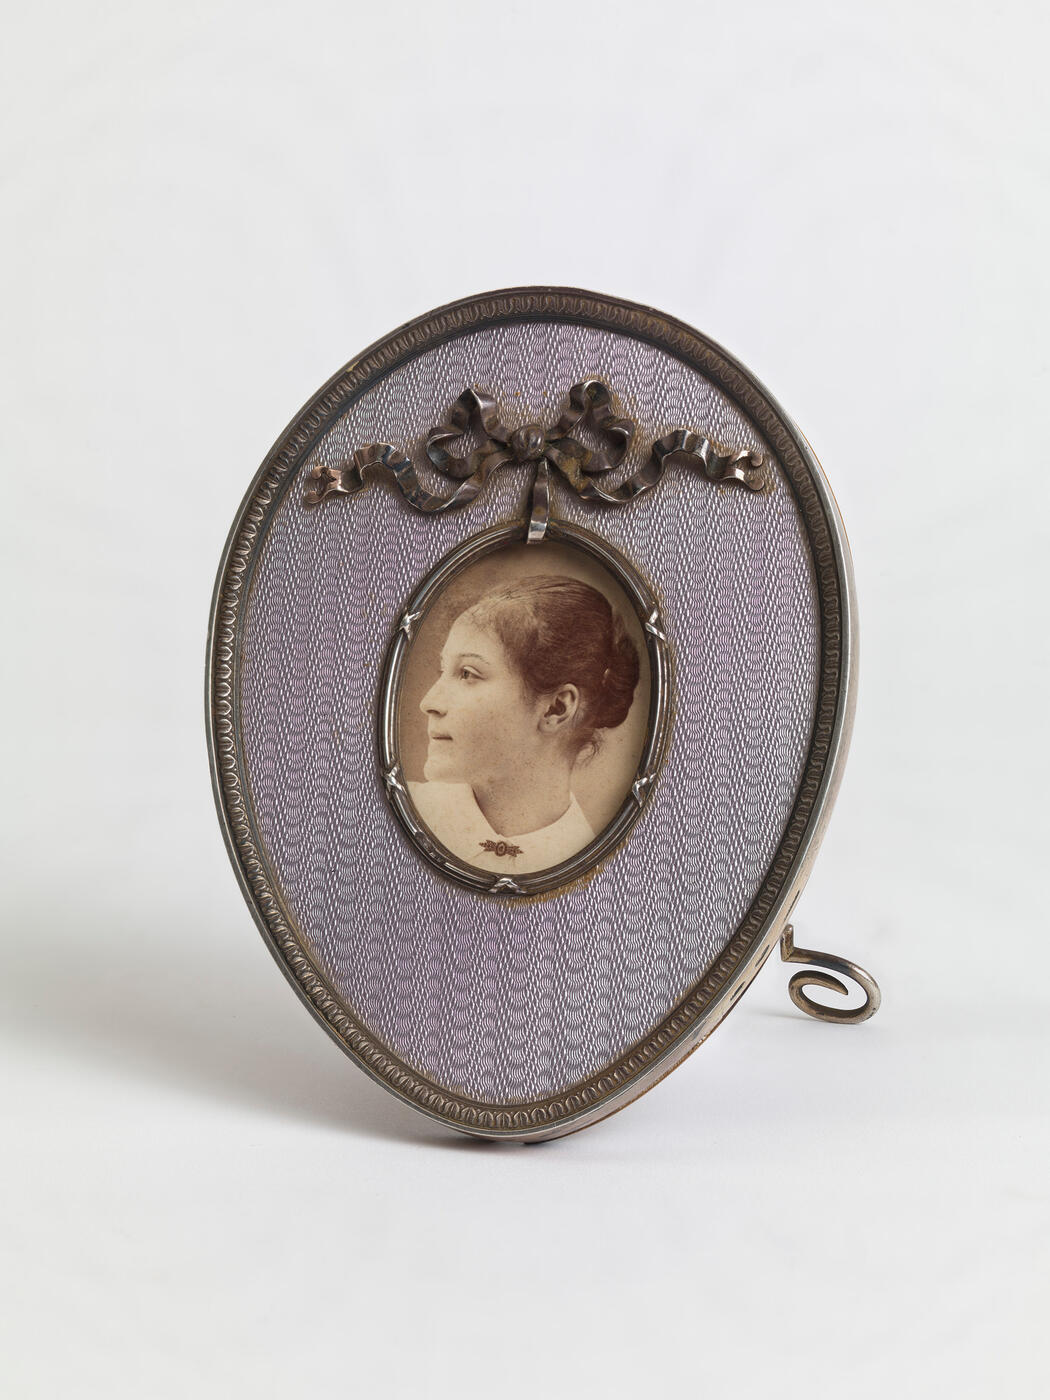 A Fabergé Silver and Guilloché Enamel Photograph Frame